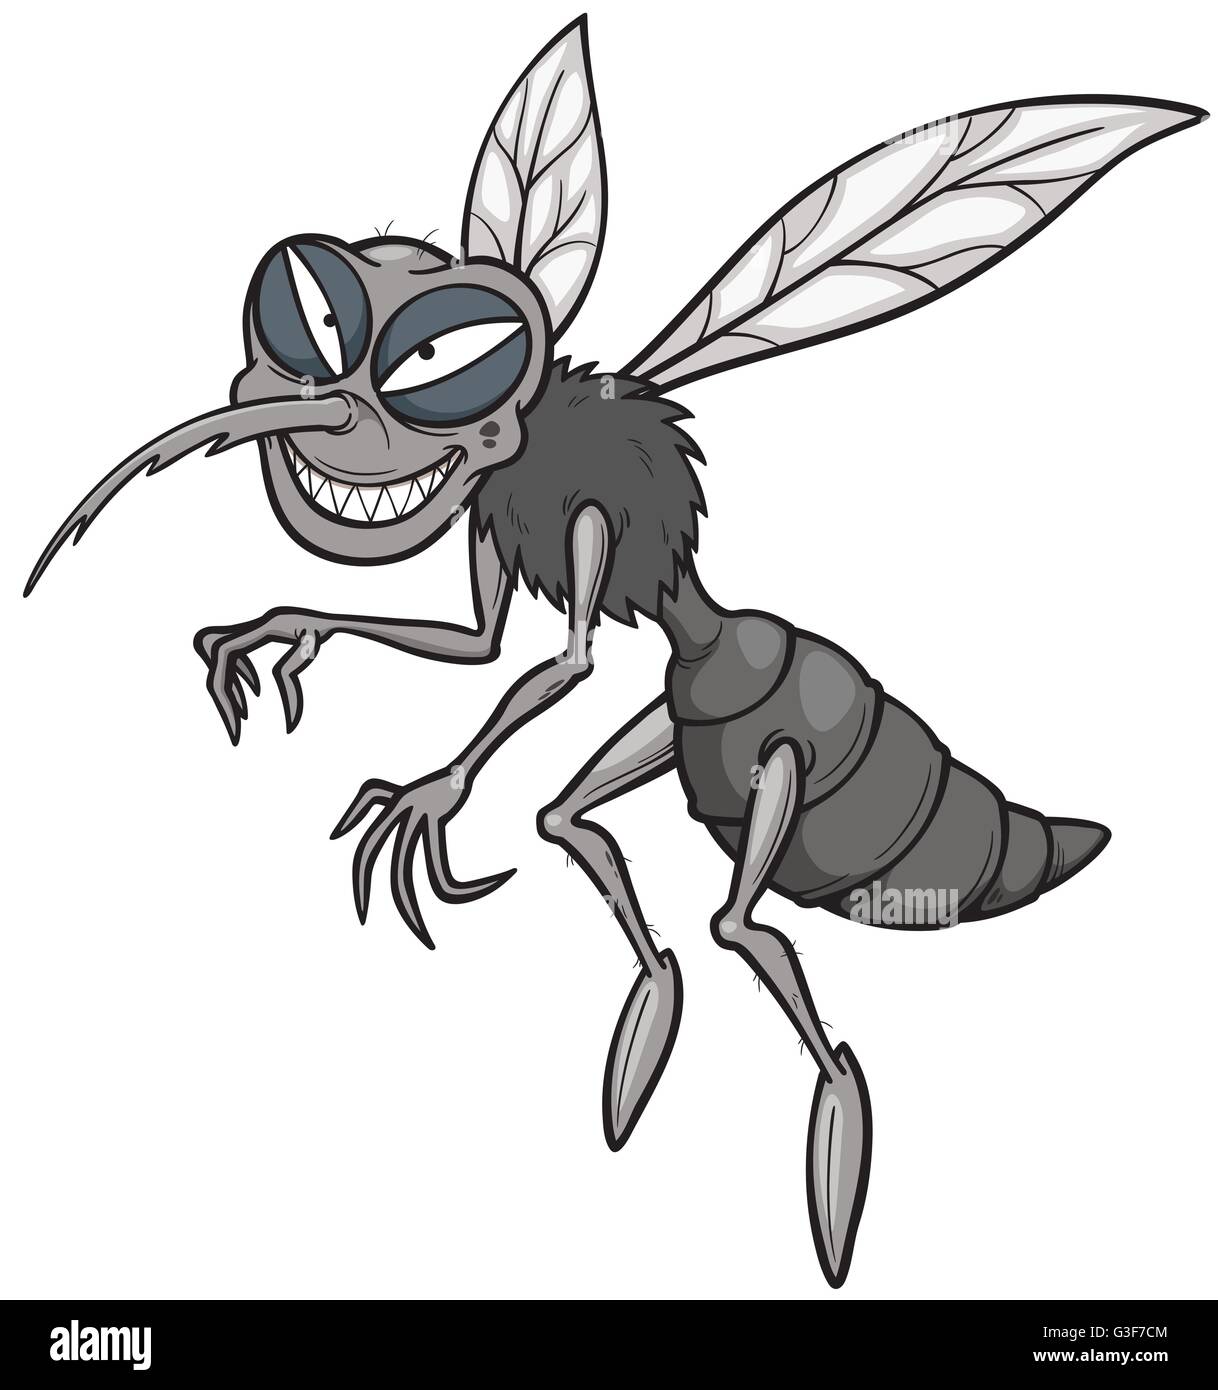 mosquitos fotos de dibujos animados